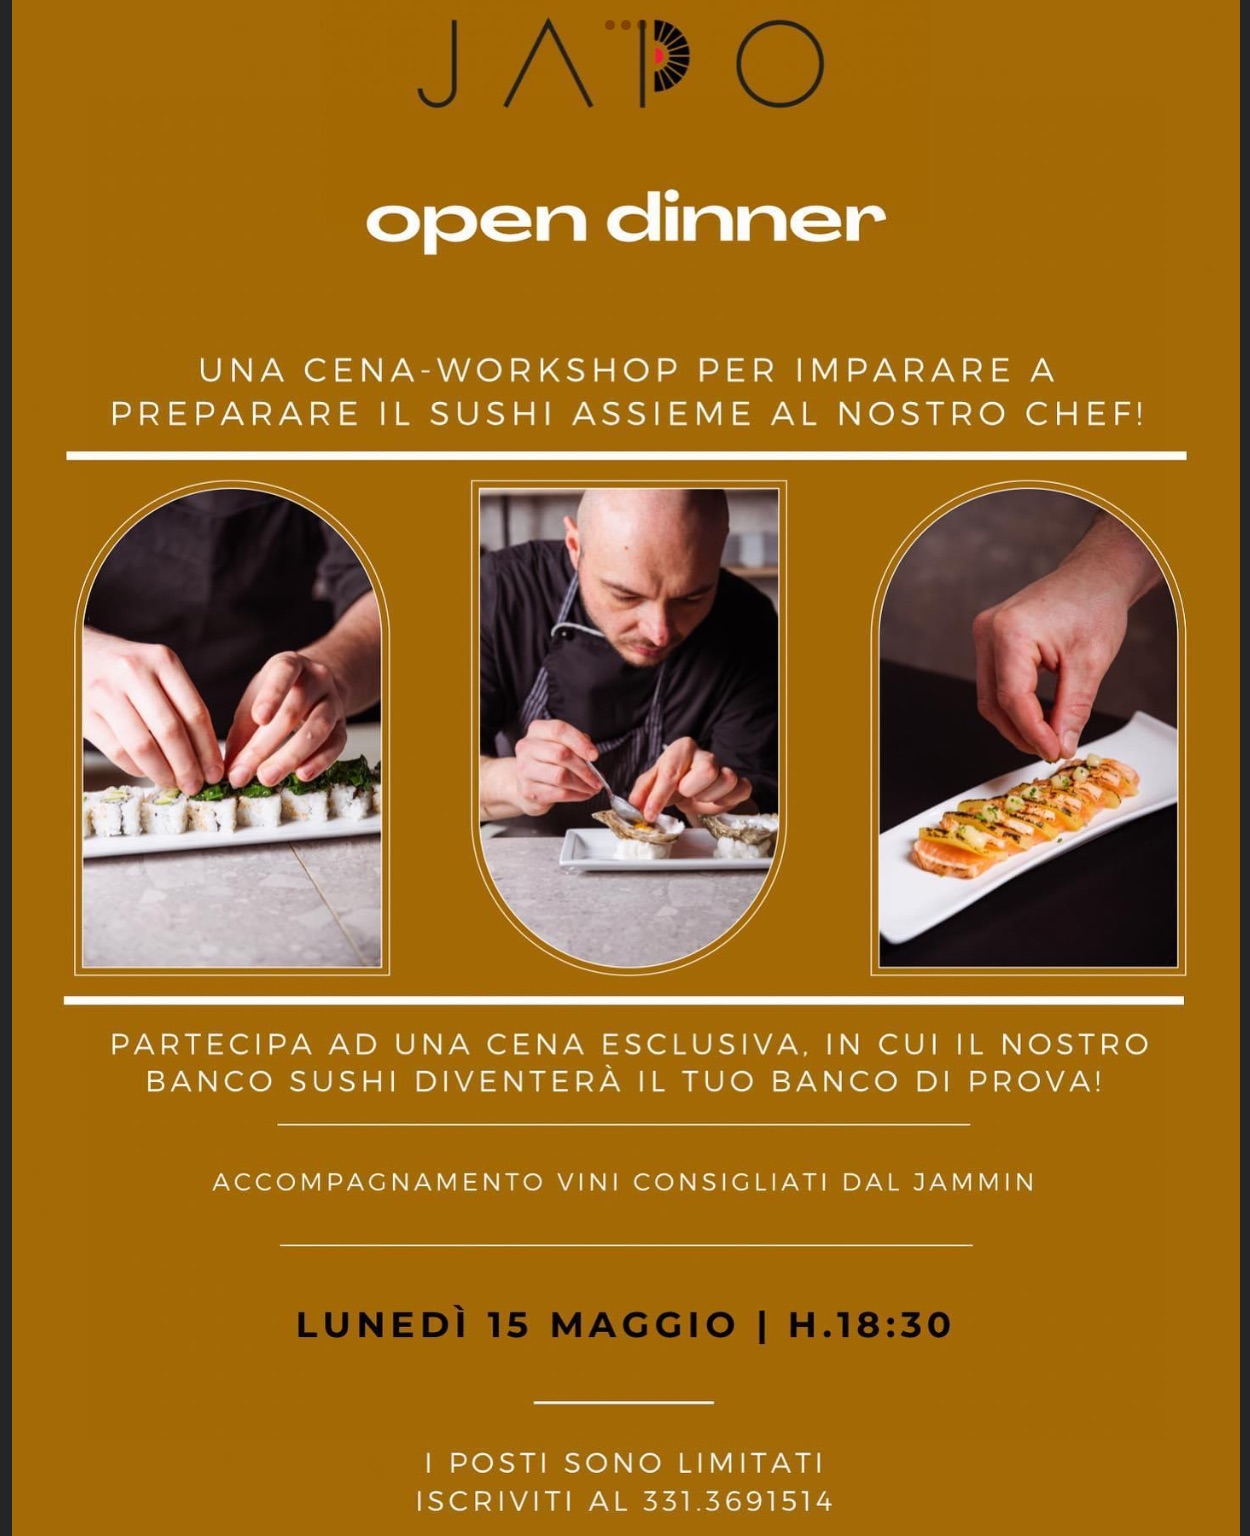 Grandioso al Japo Restaurant di Treviglio: una Open Dinner per conoscere, apprezzare e abbinare il Sushi…